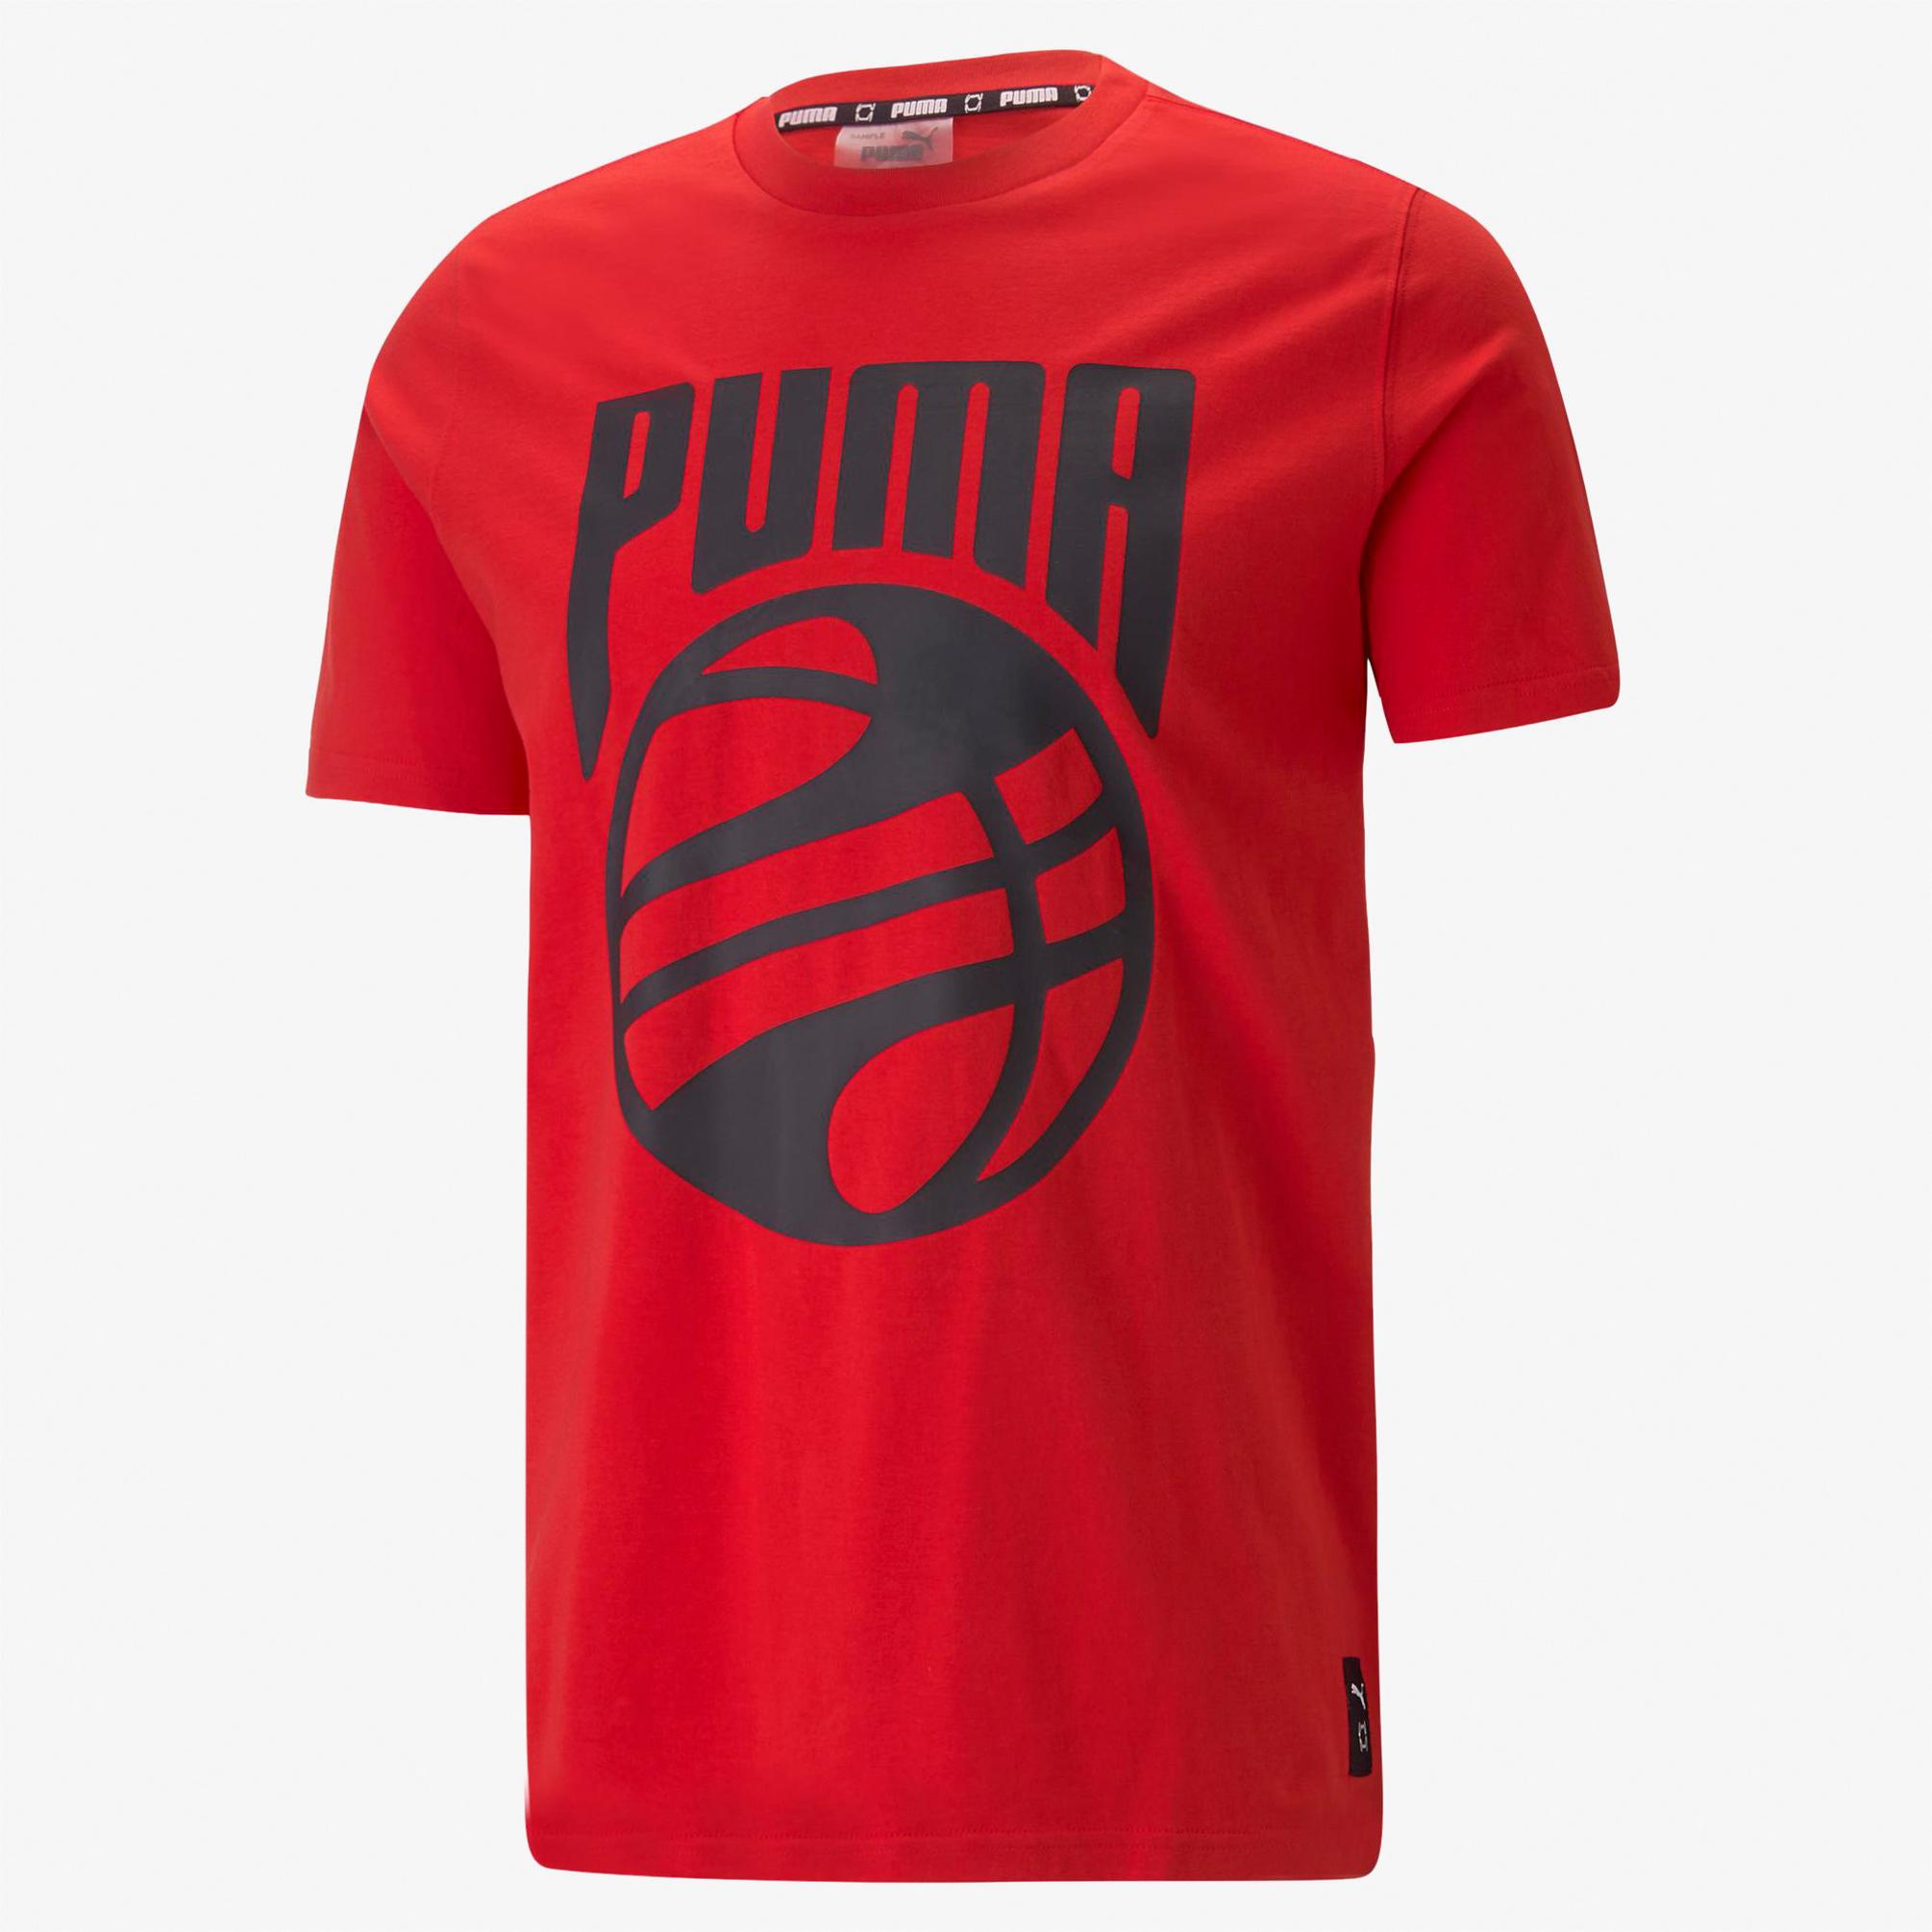  Puma Posterize Tee PUMA White Erkek Kırmızı T-Shirt